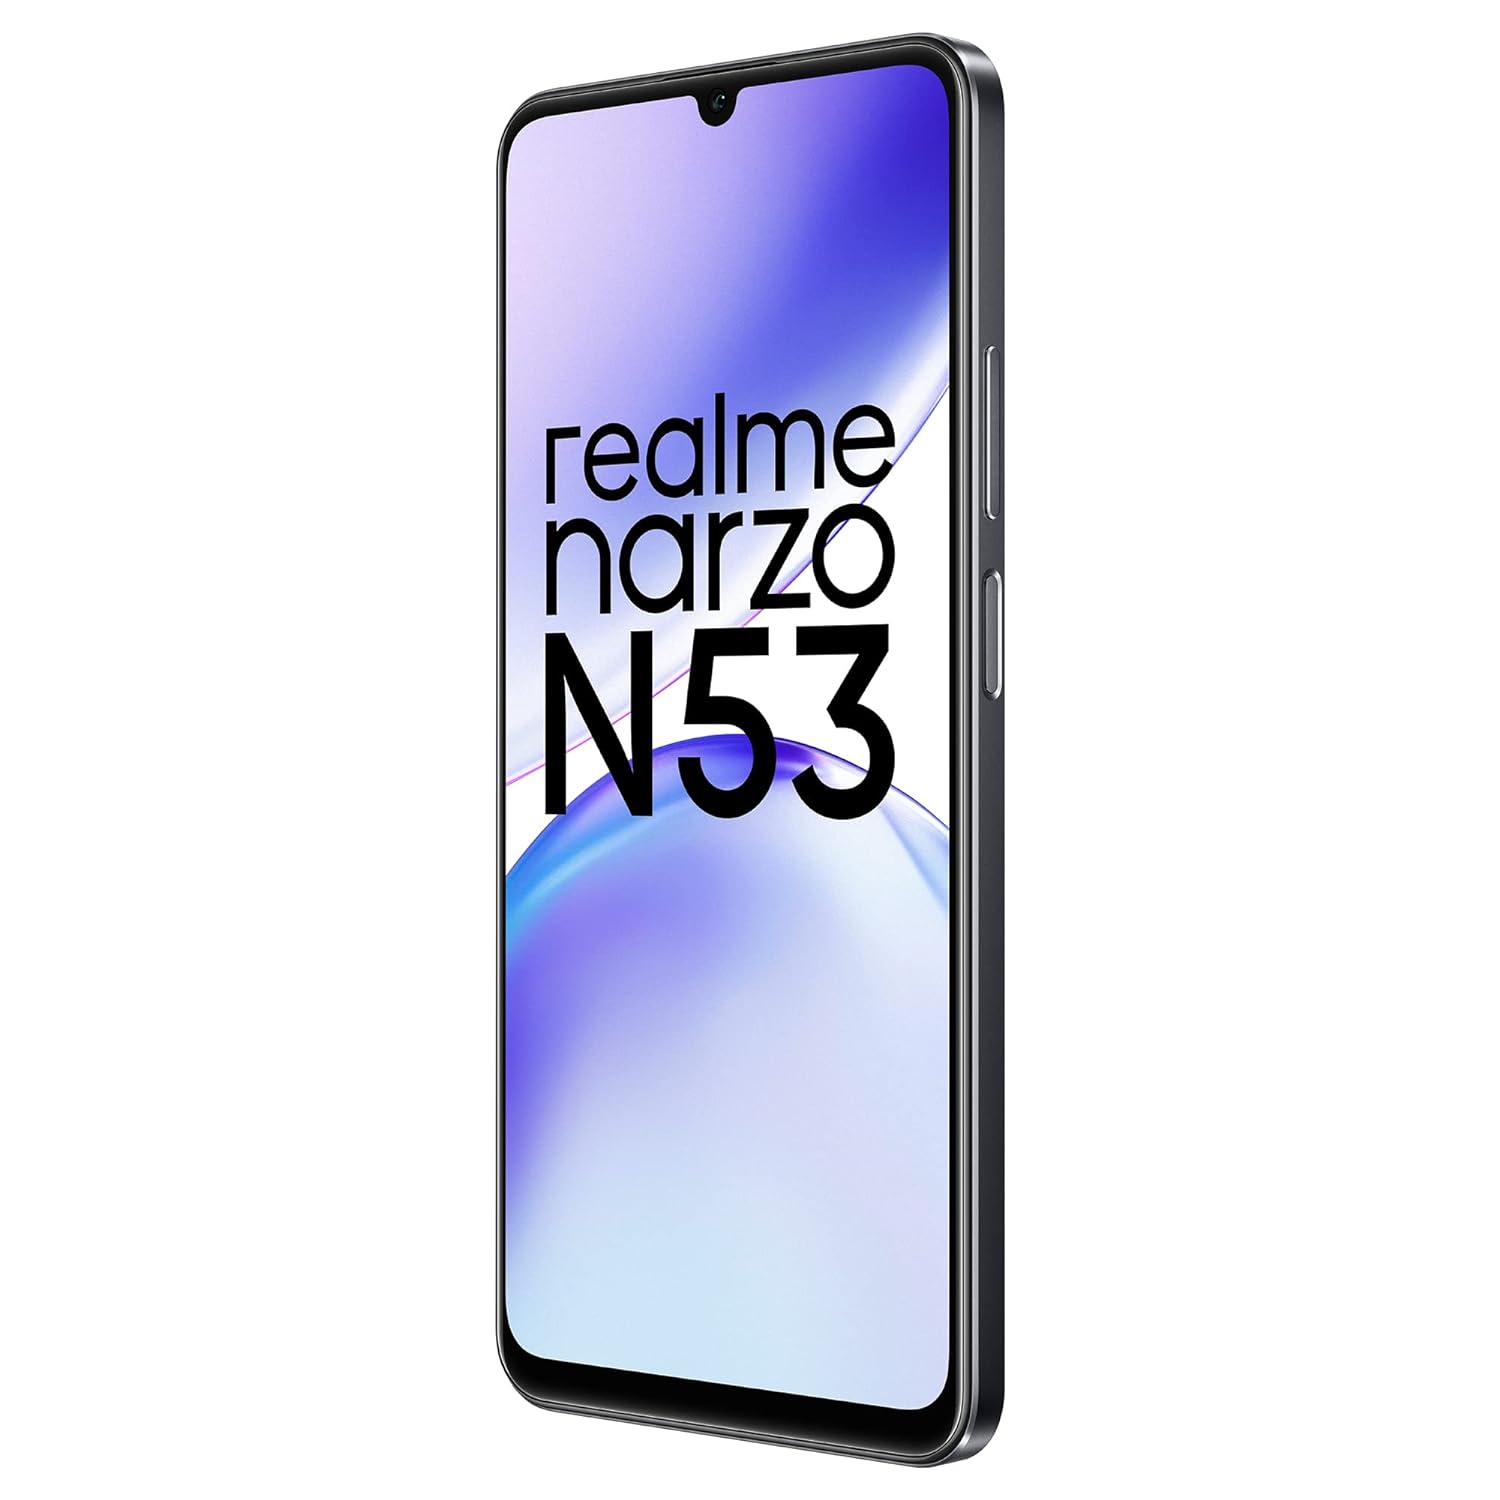 realme narzo N53 (Feather Black, 64GB) (4GB RAM)